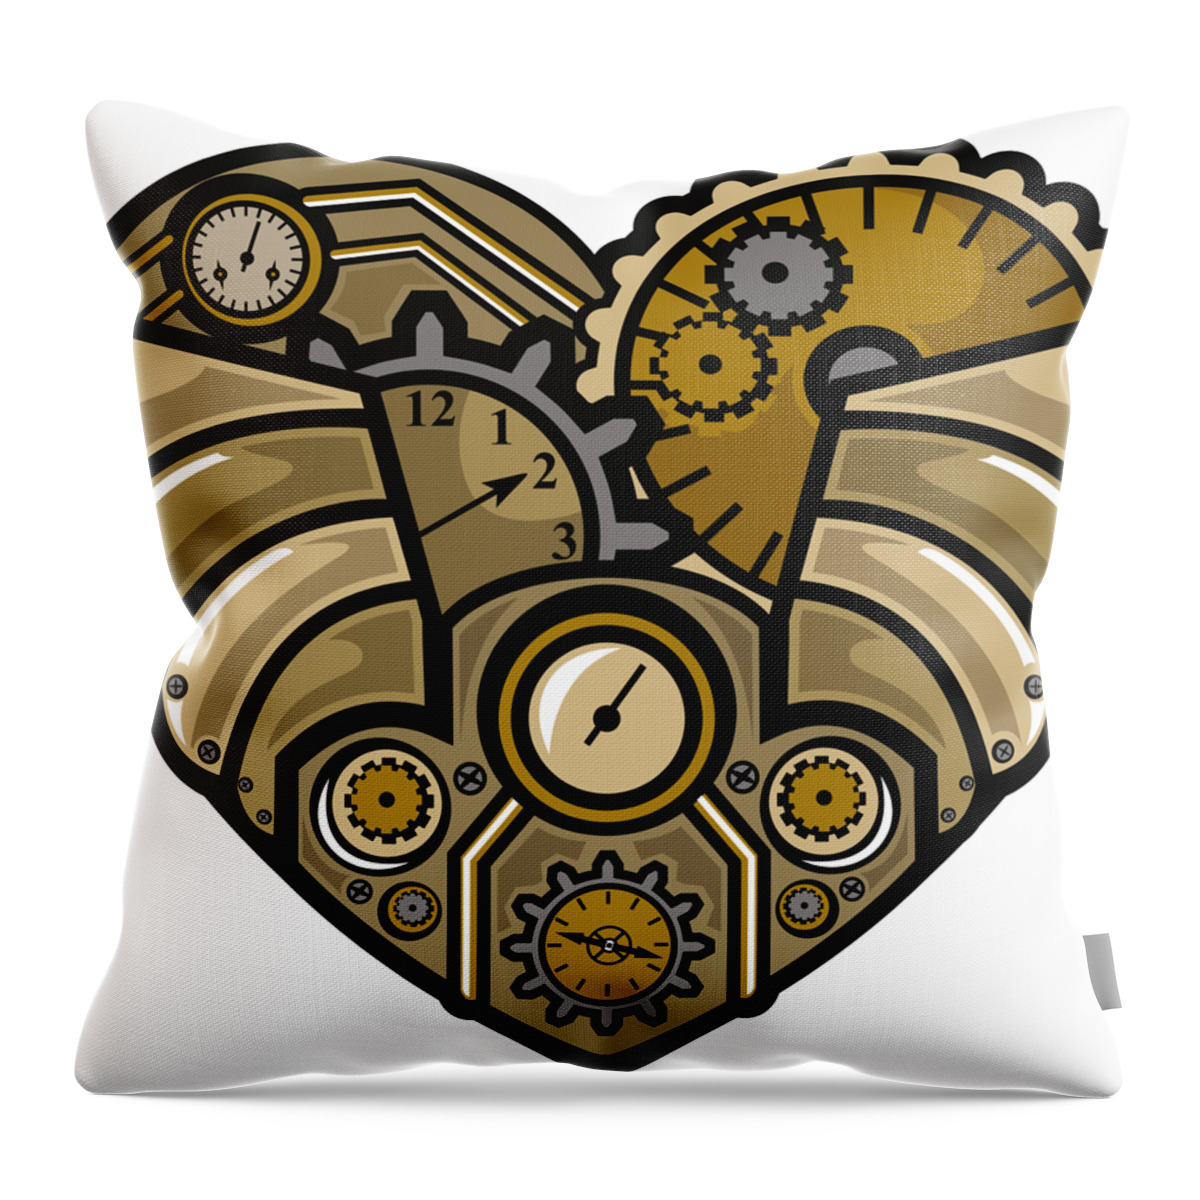 Steampunk Throw Pillow featuring the digital art Steampunk Heart by Long Shot